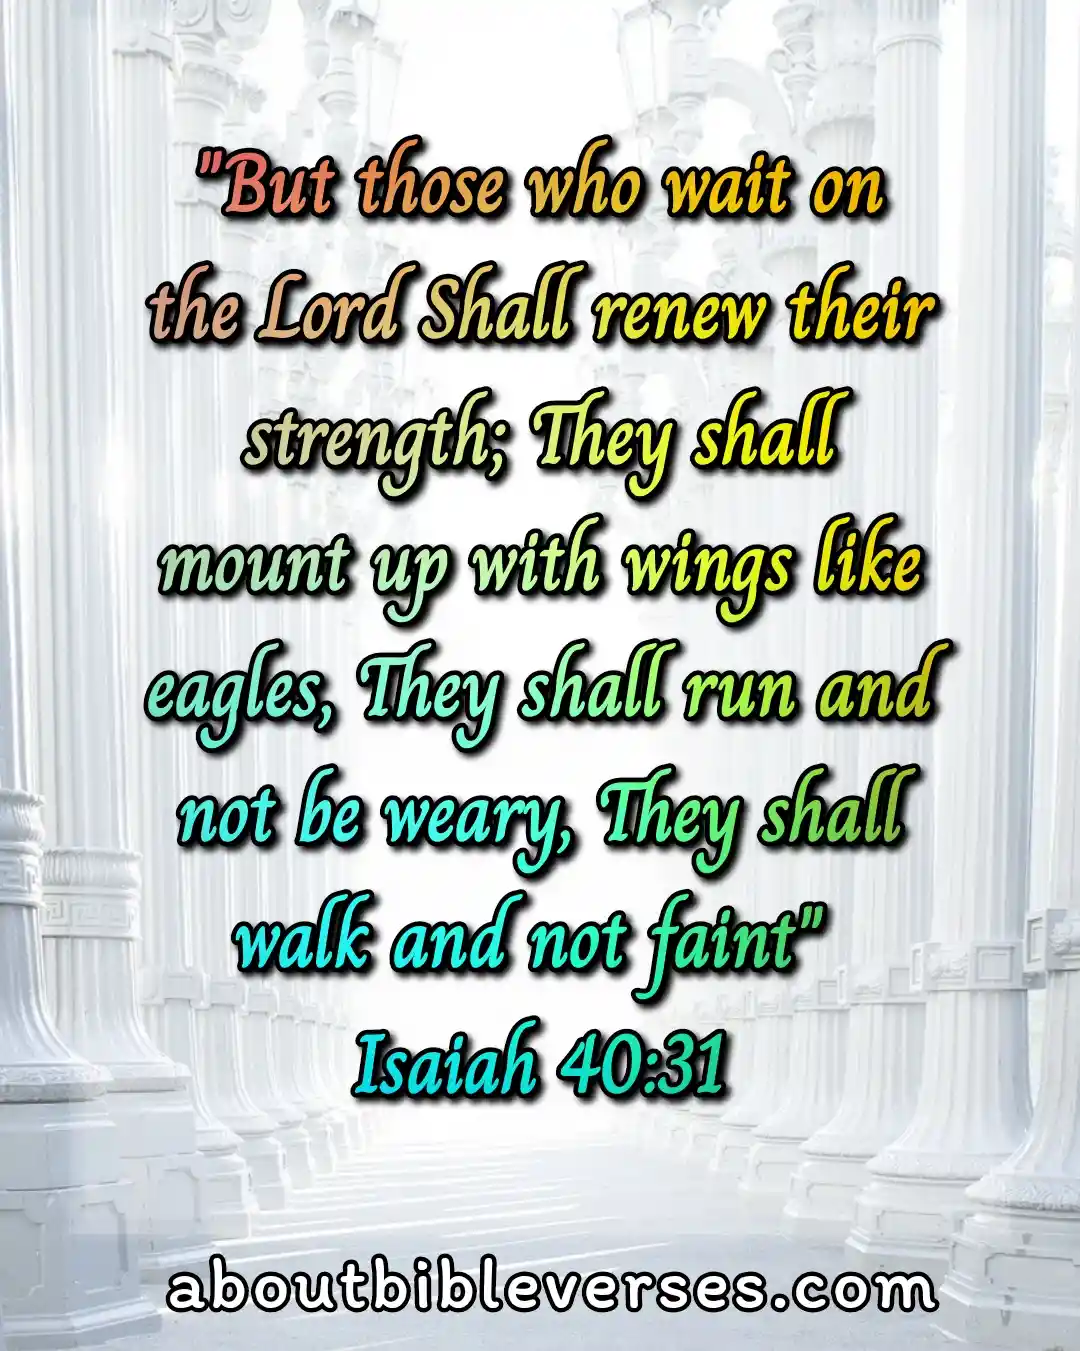 today bible verse (Isaiah 40:31)